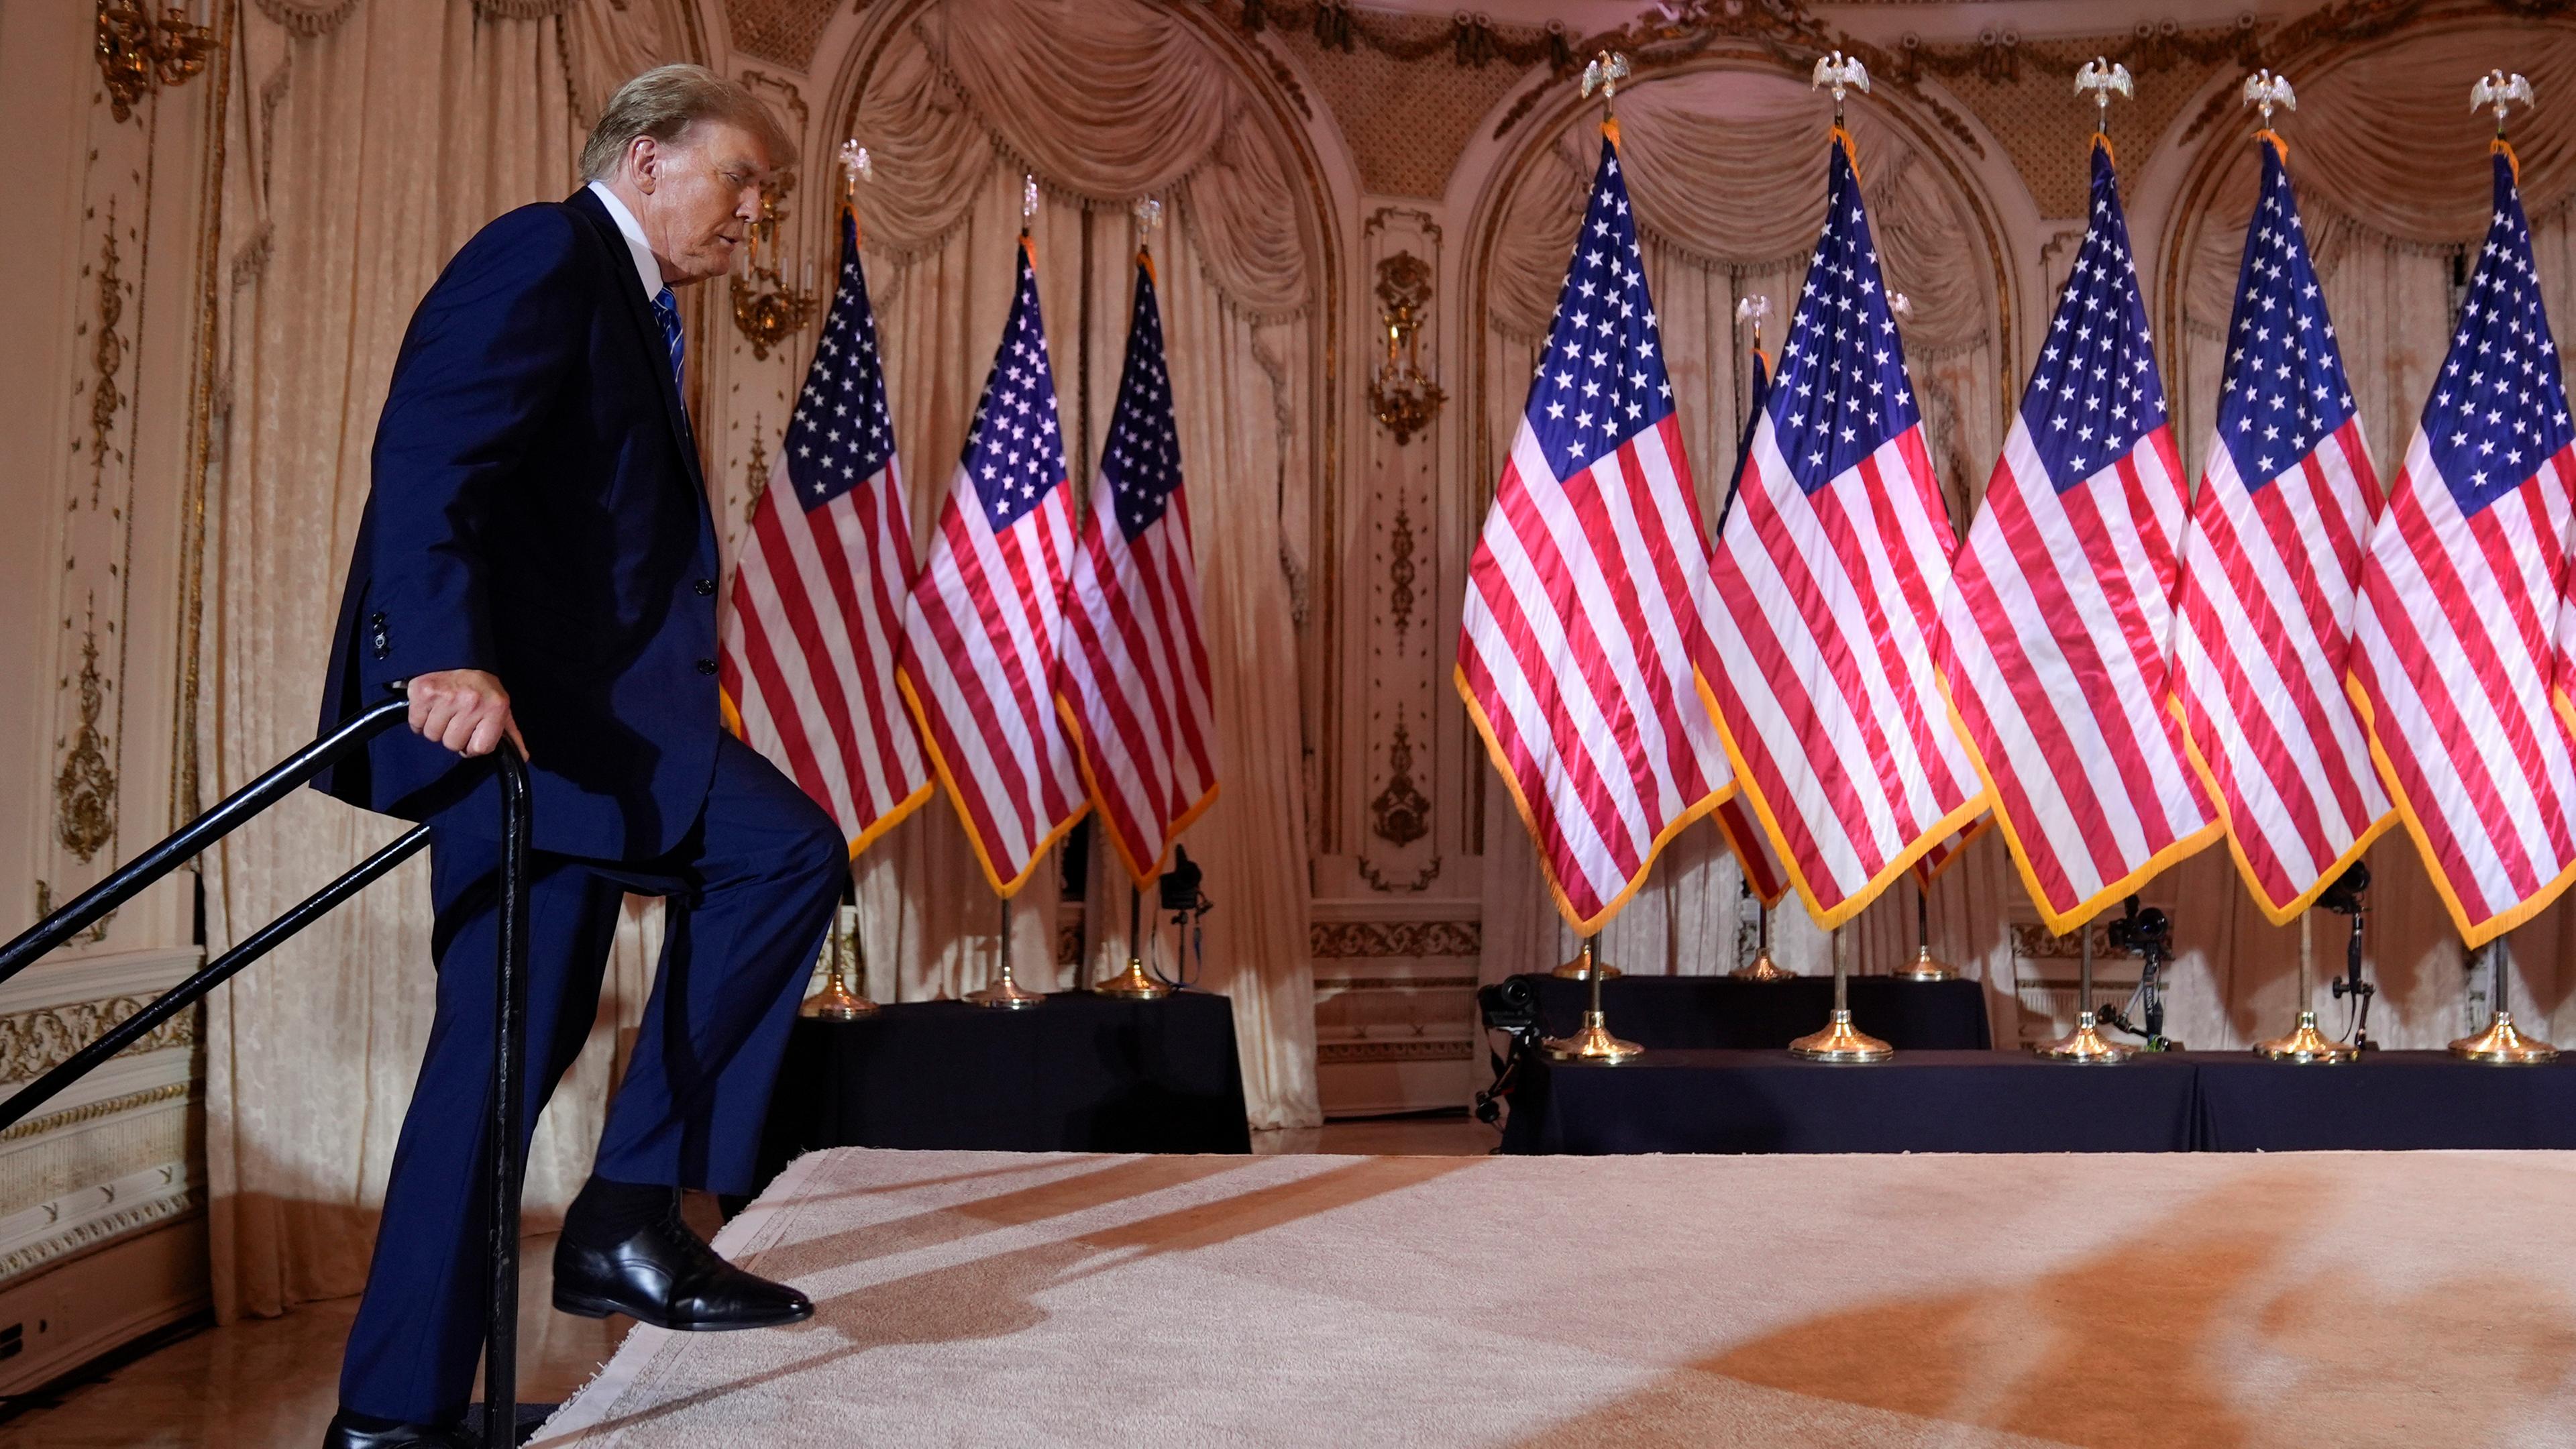 Der ehemalige US-Präsident Donald Trump betritt eine Bühne auf der viele US-Flaggen aufgestellt sind. 